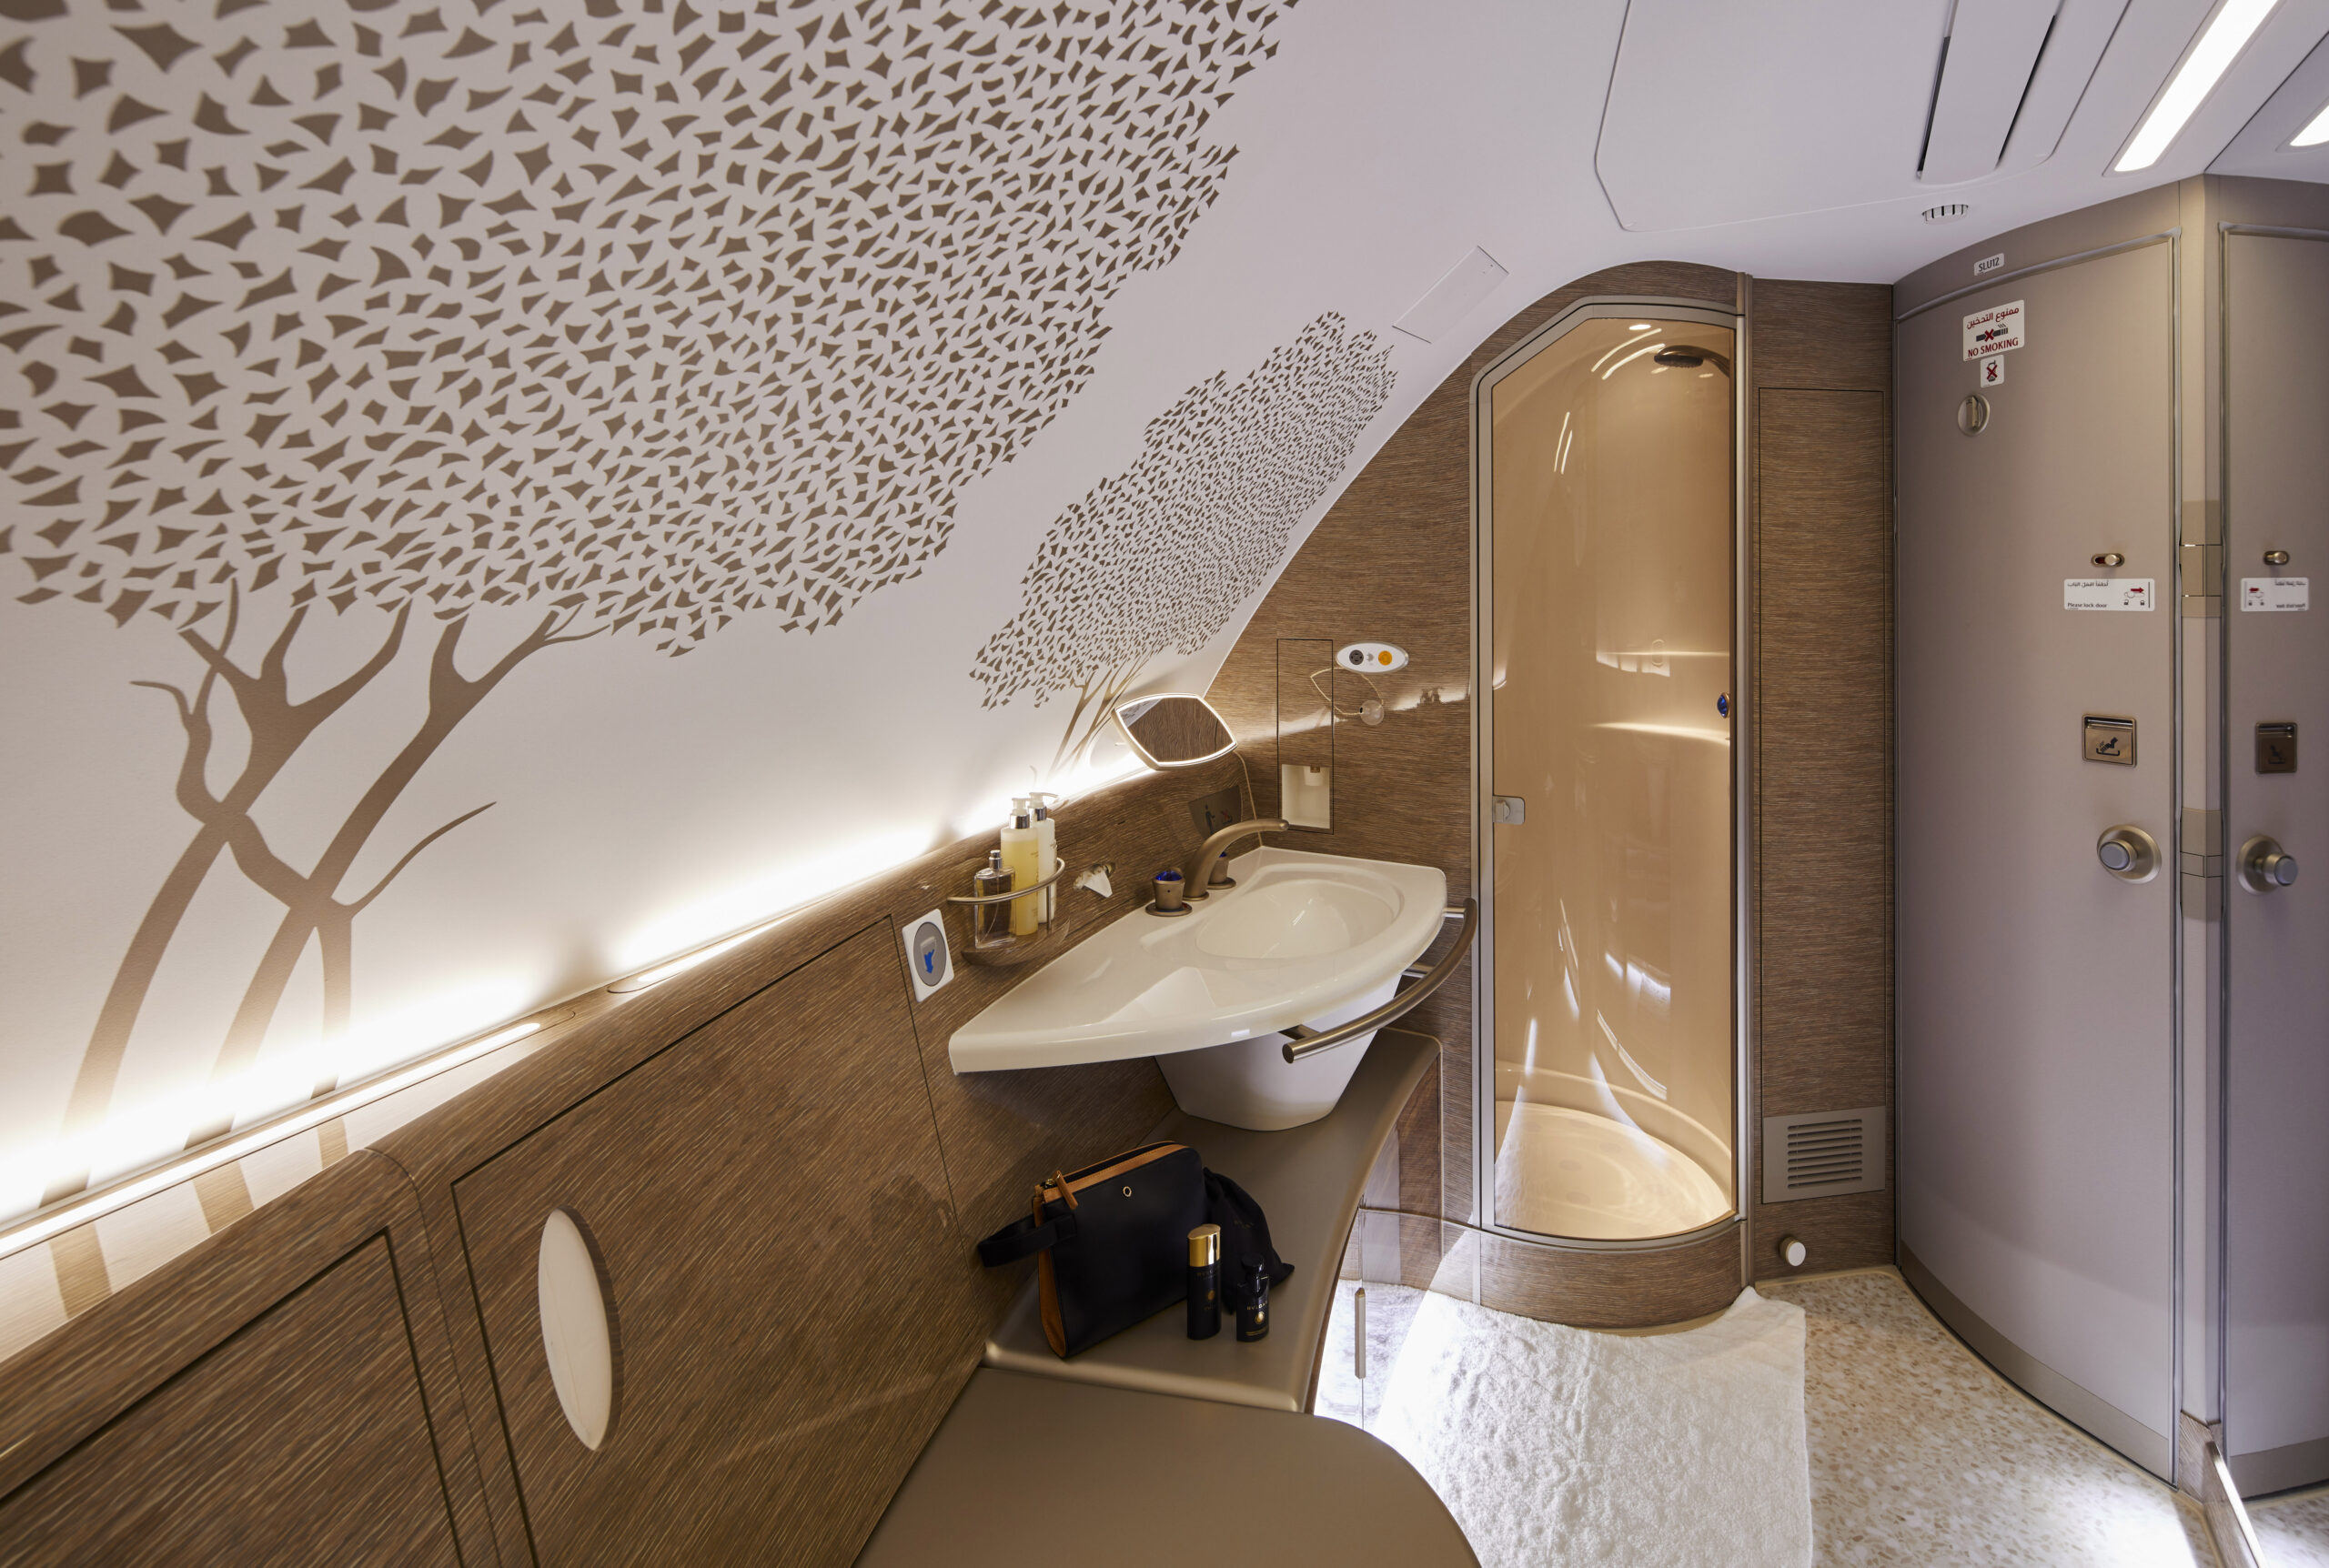 エミレーツ航空(EK)がエアバス A380機材の座席を一新